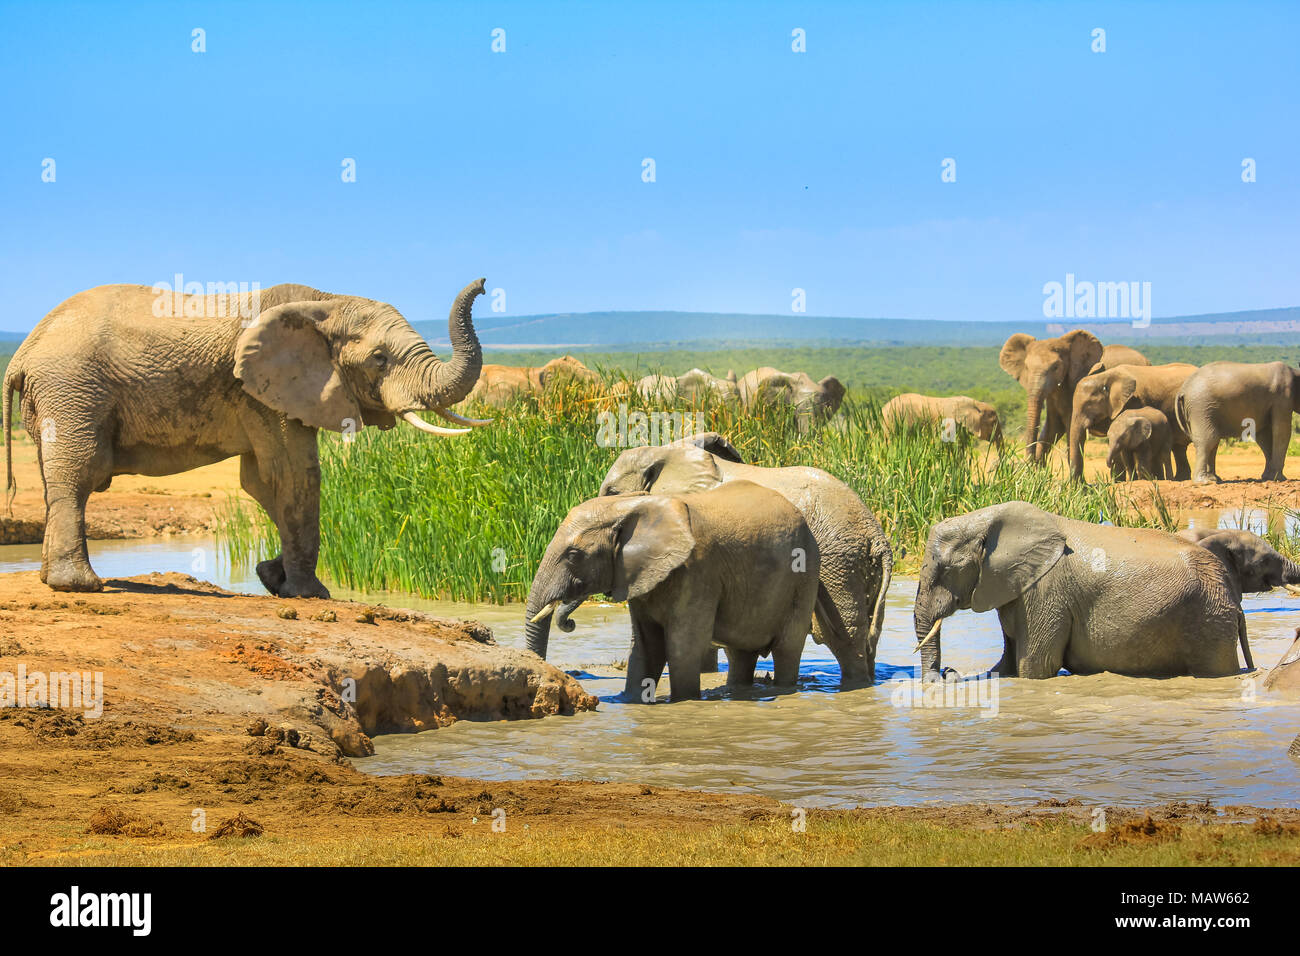 Afrikanische Elefanten in der Nähe von einem großen Pool und andere im Wasser, die sich mit Schlamm zu kühlen. Addo Elephant National Park, Eastern Cape, Südafrika. Saison Sommer in einem sonnigen Tag. Stockfoto